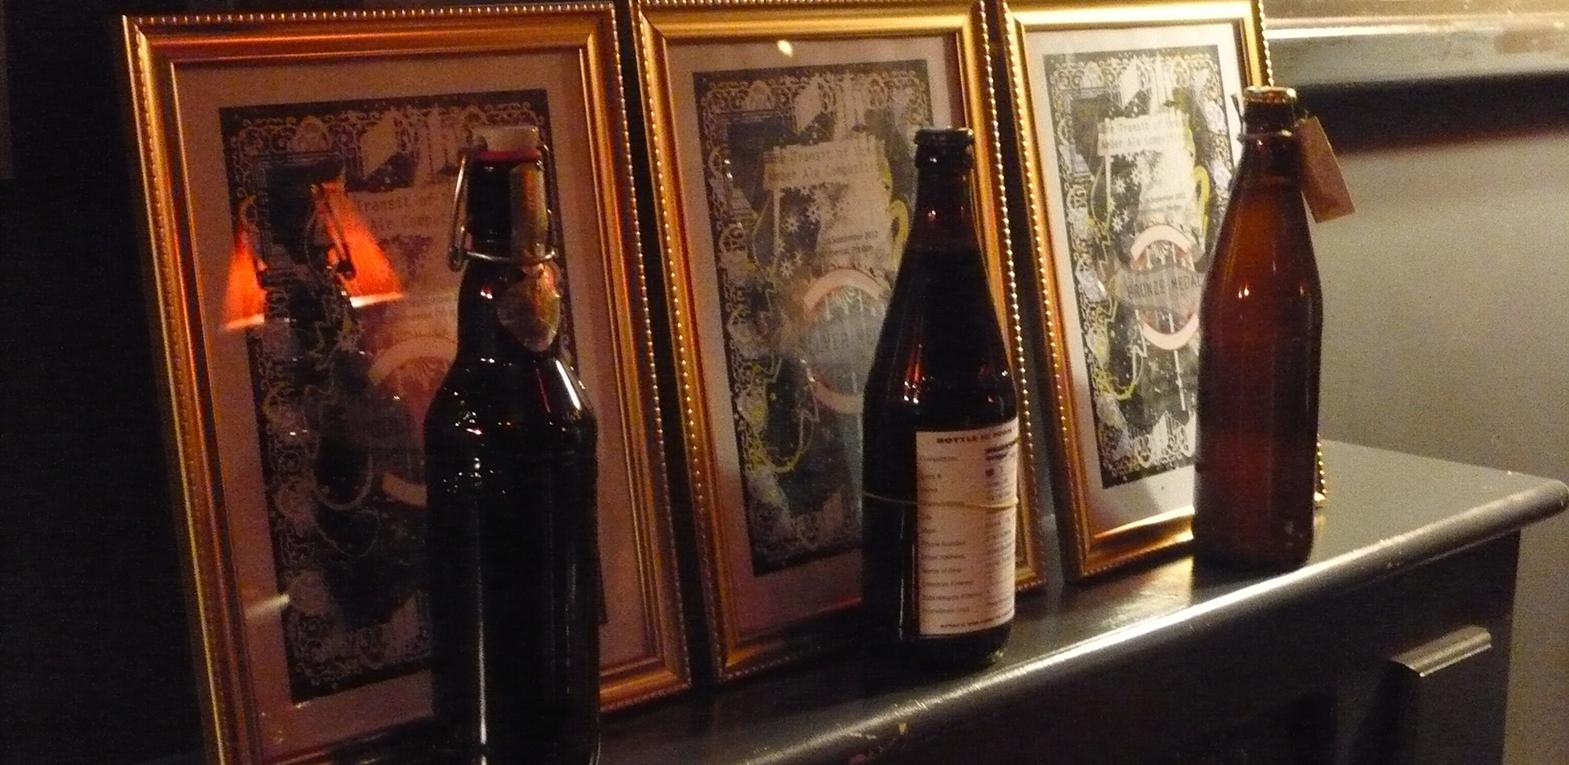 3 beer bottles on a sideboard